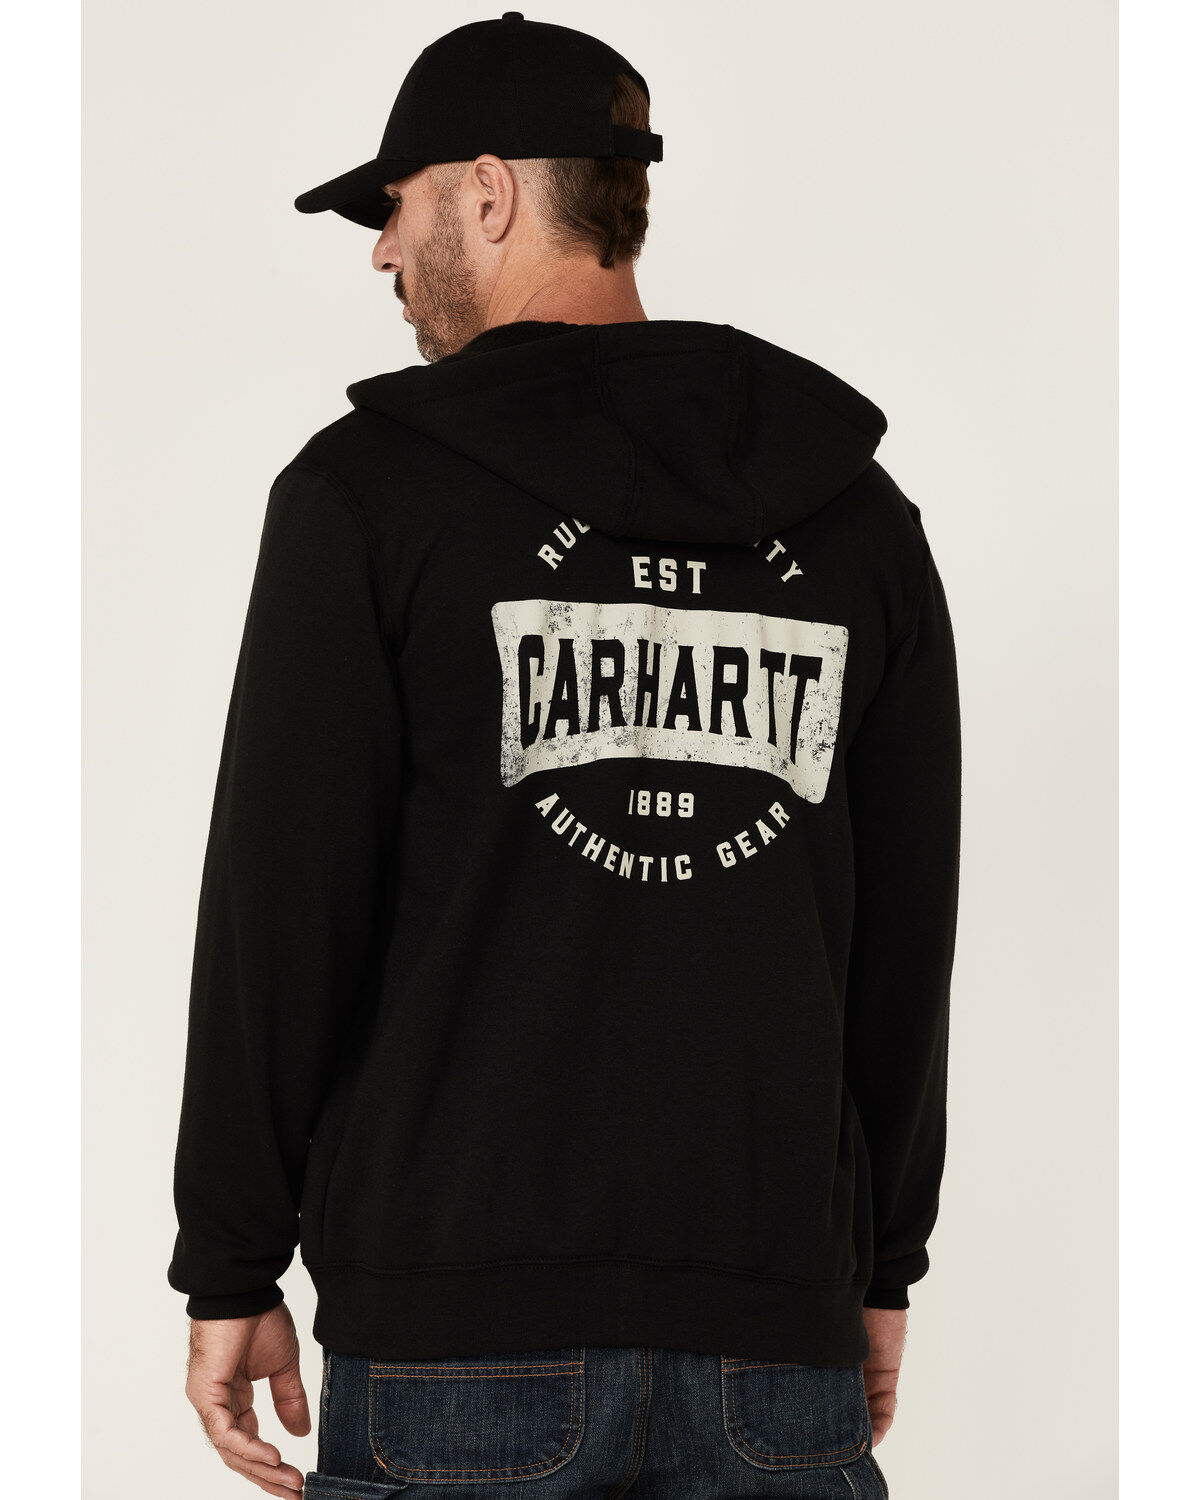 Carhartt Men's Authentic Gear Graphic Midweight Zip-Front Hooded Sweatshirt